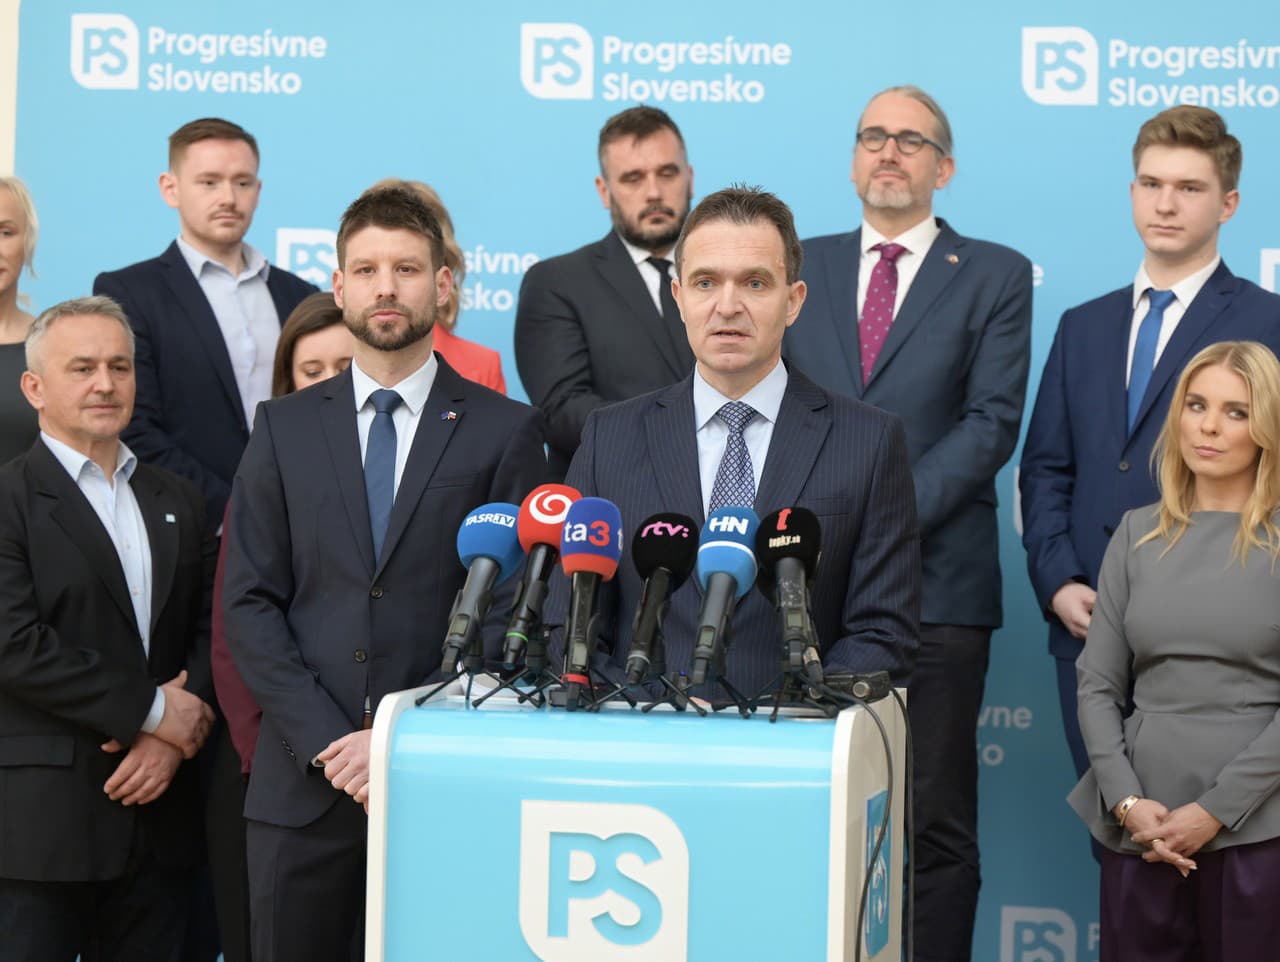 Predstavenie kompletnej kandidátky hnutia Progresívne Slovensko do volieb do Európskeho parlamentu 